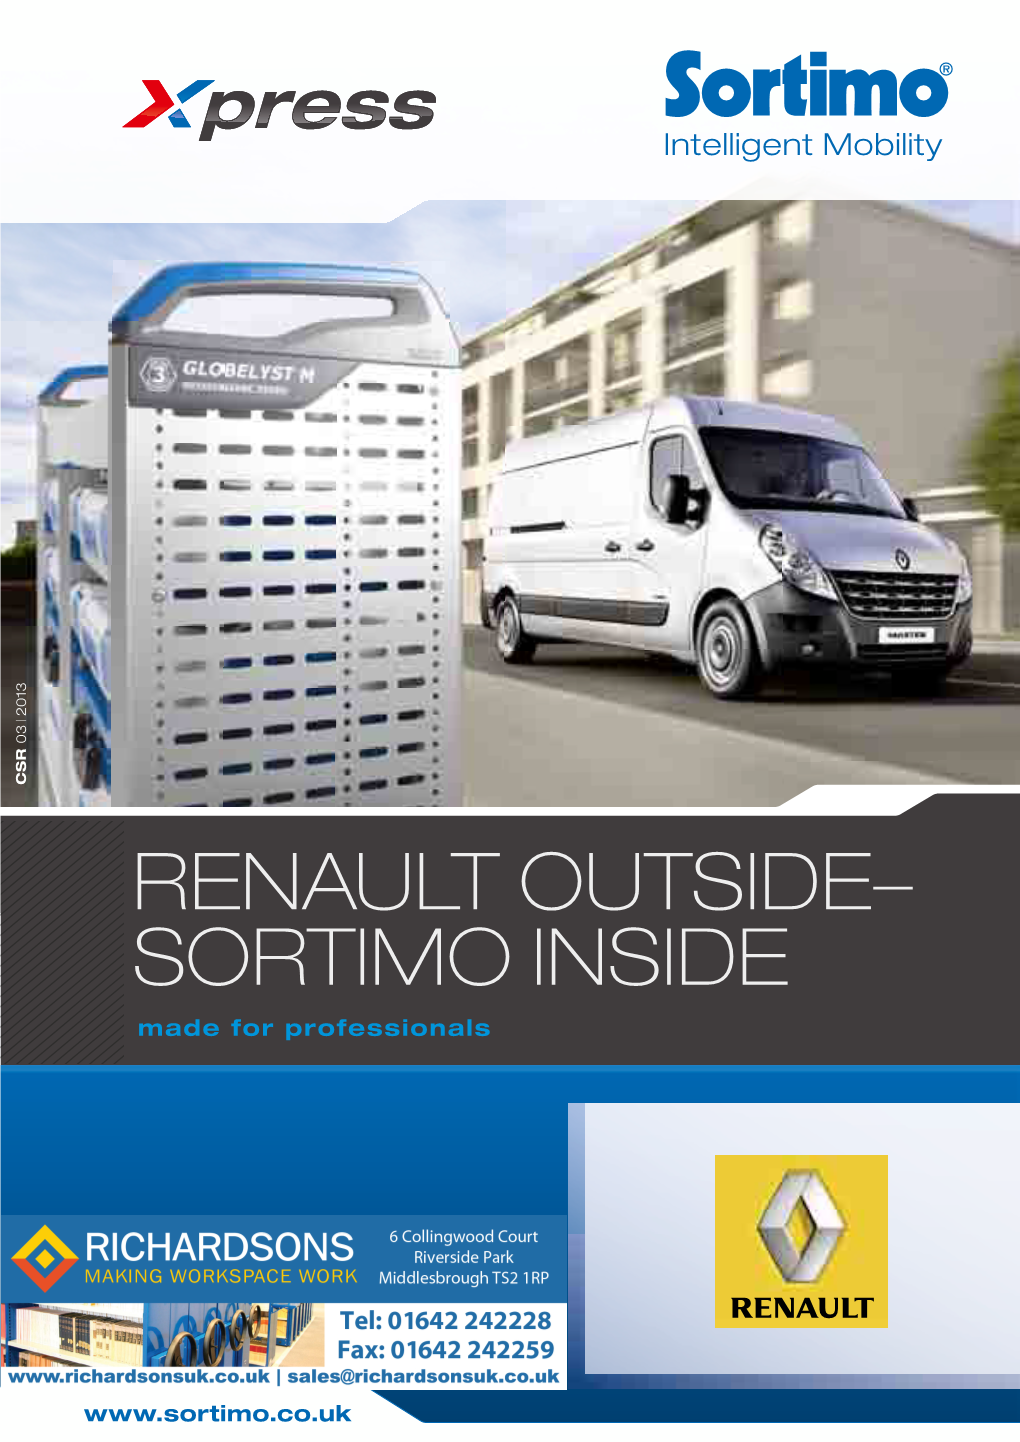 Renault Outside– Sortimo Inside